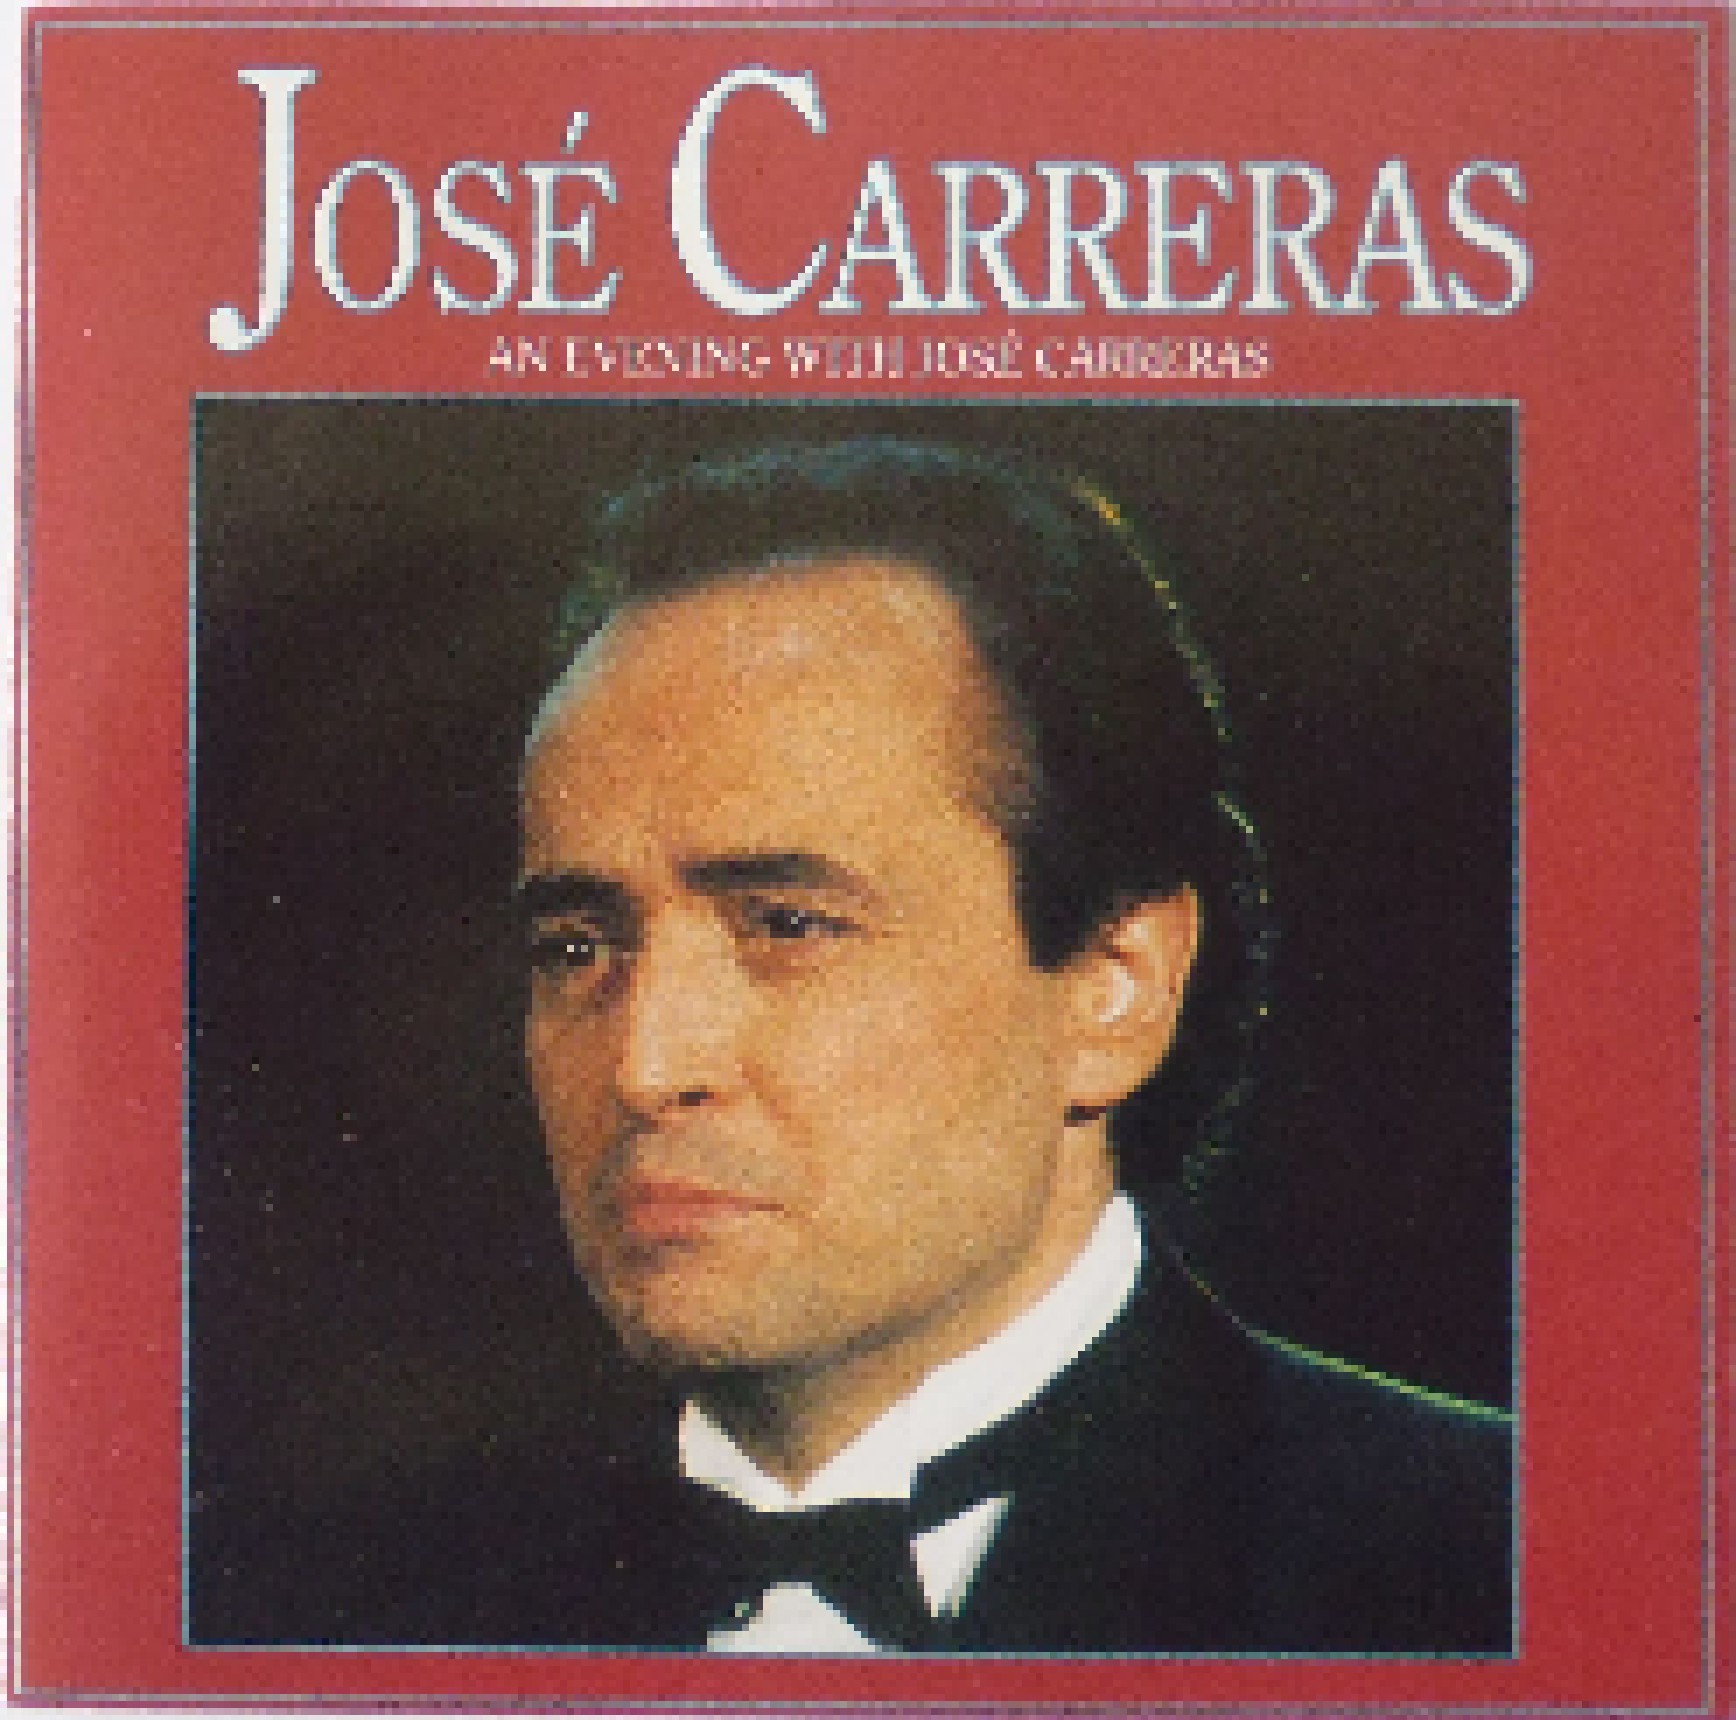 An Evening With José Carreras Cd 1992 Compilation Live Von José Carreras